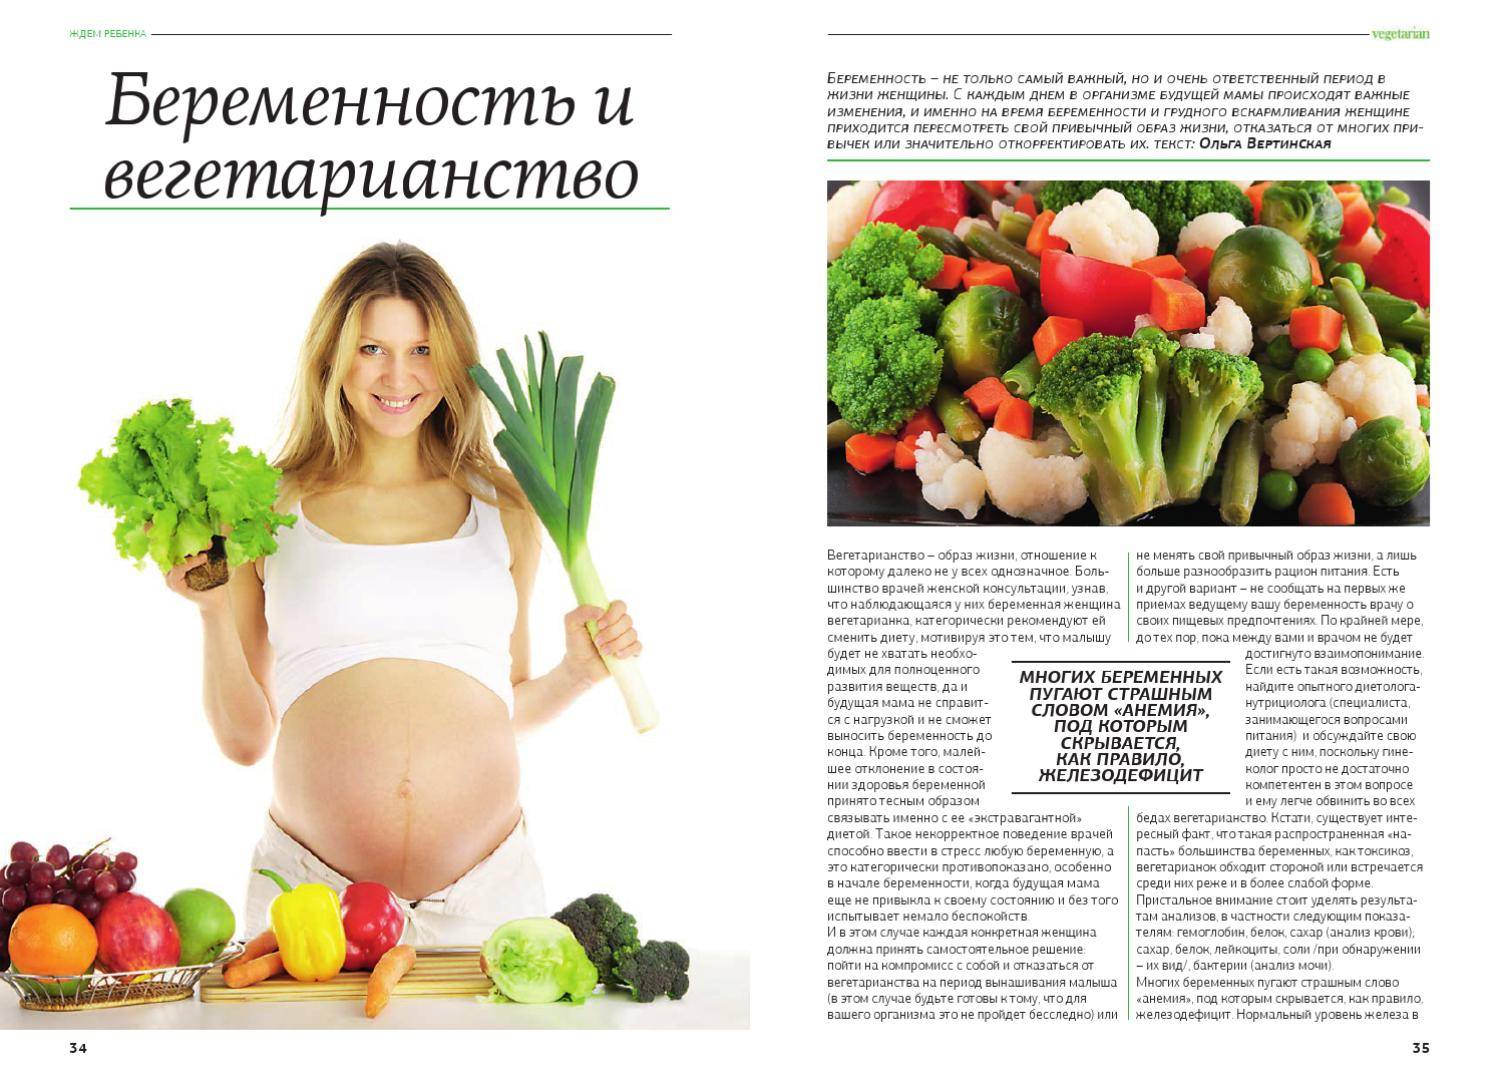 Омега-3: в чем польза для беременных и кормящих мам?